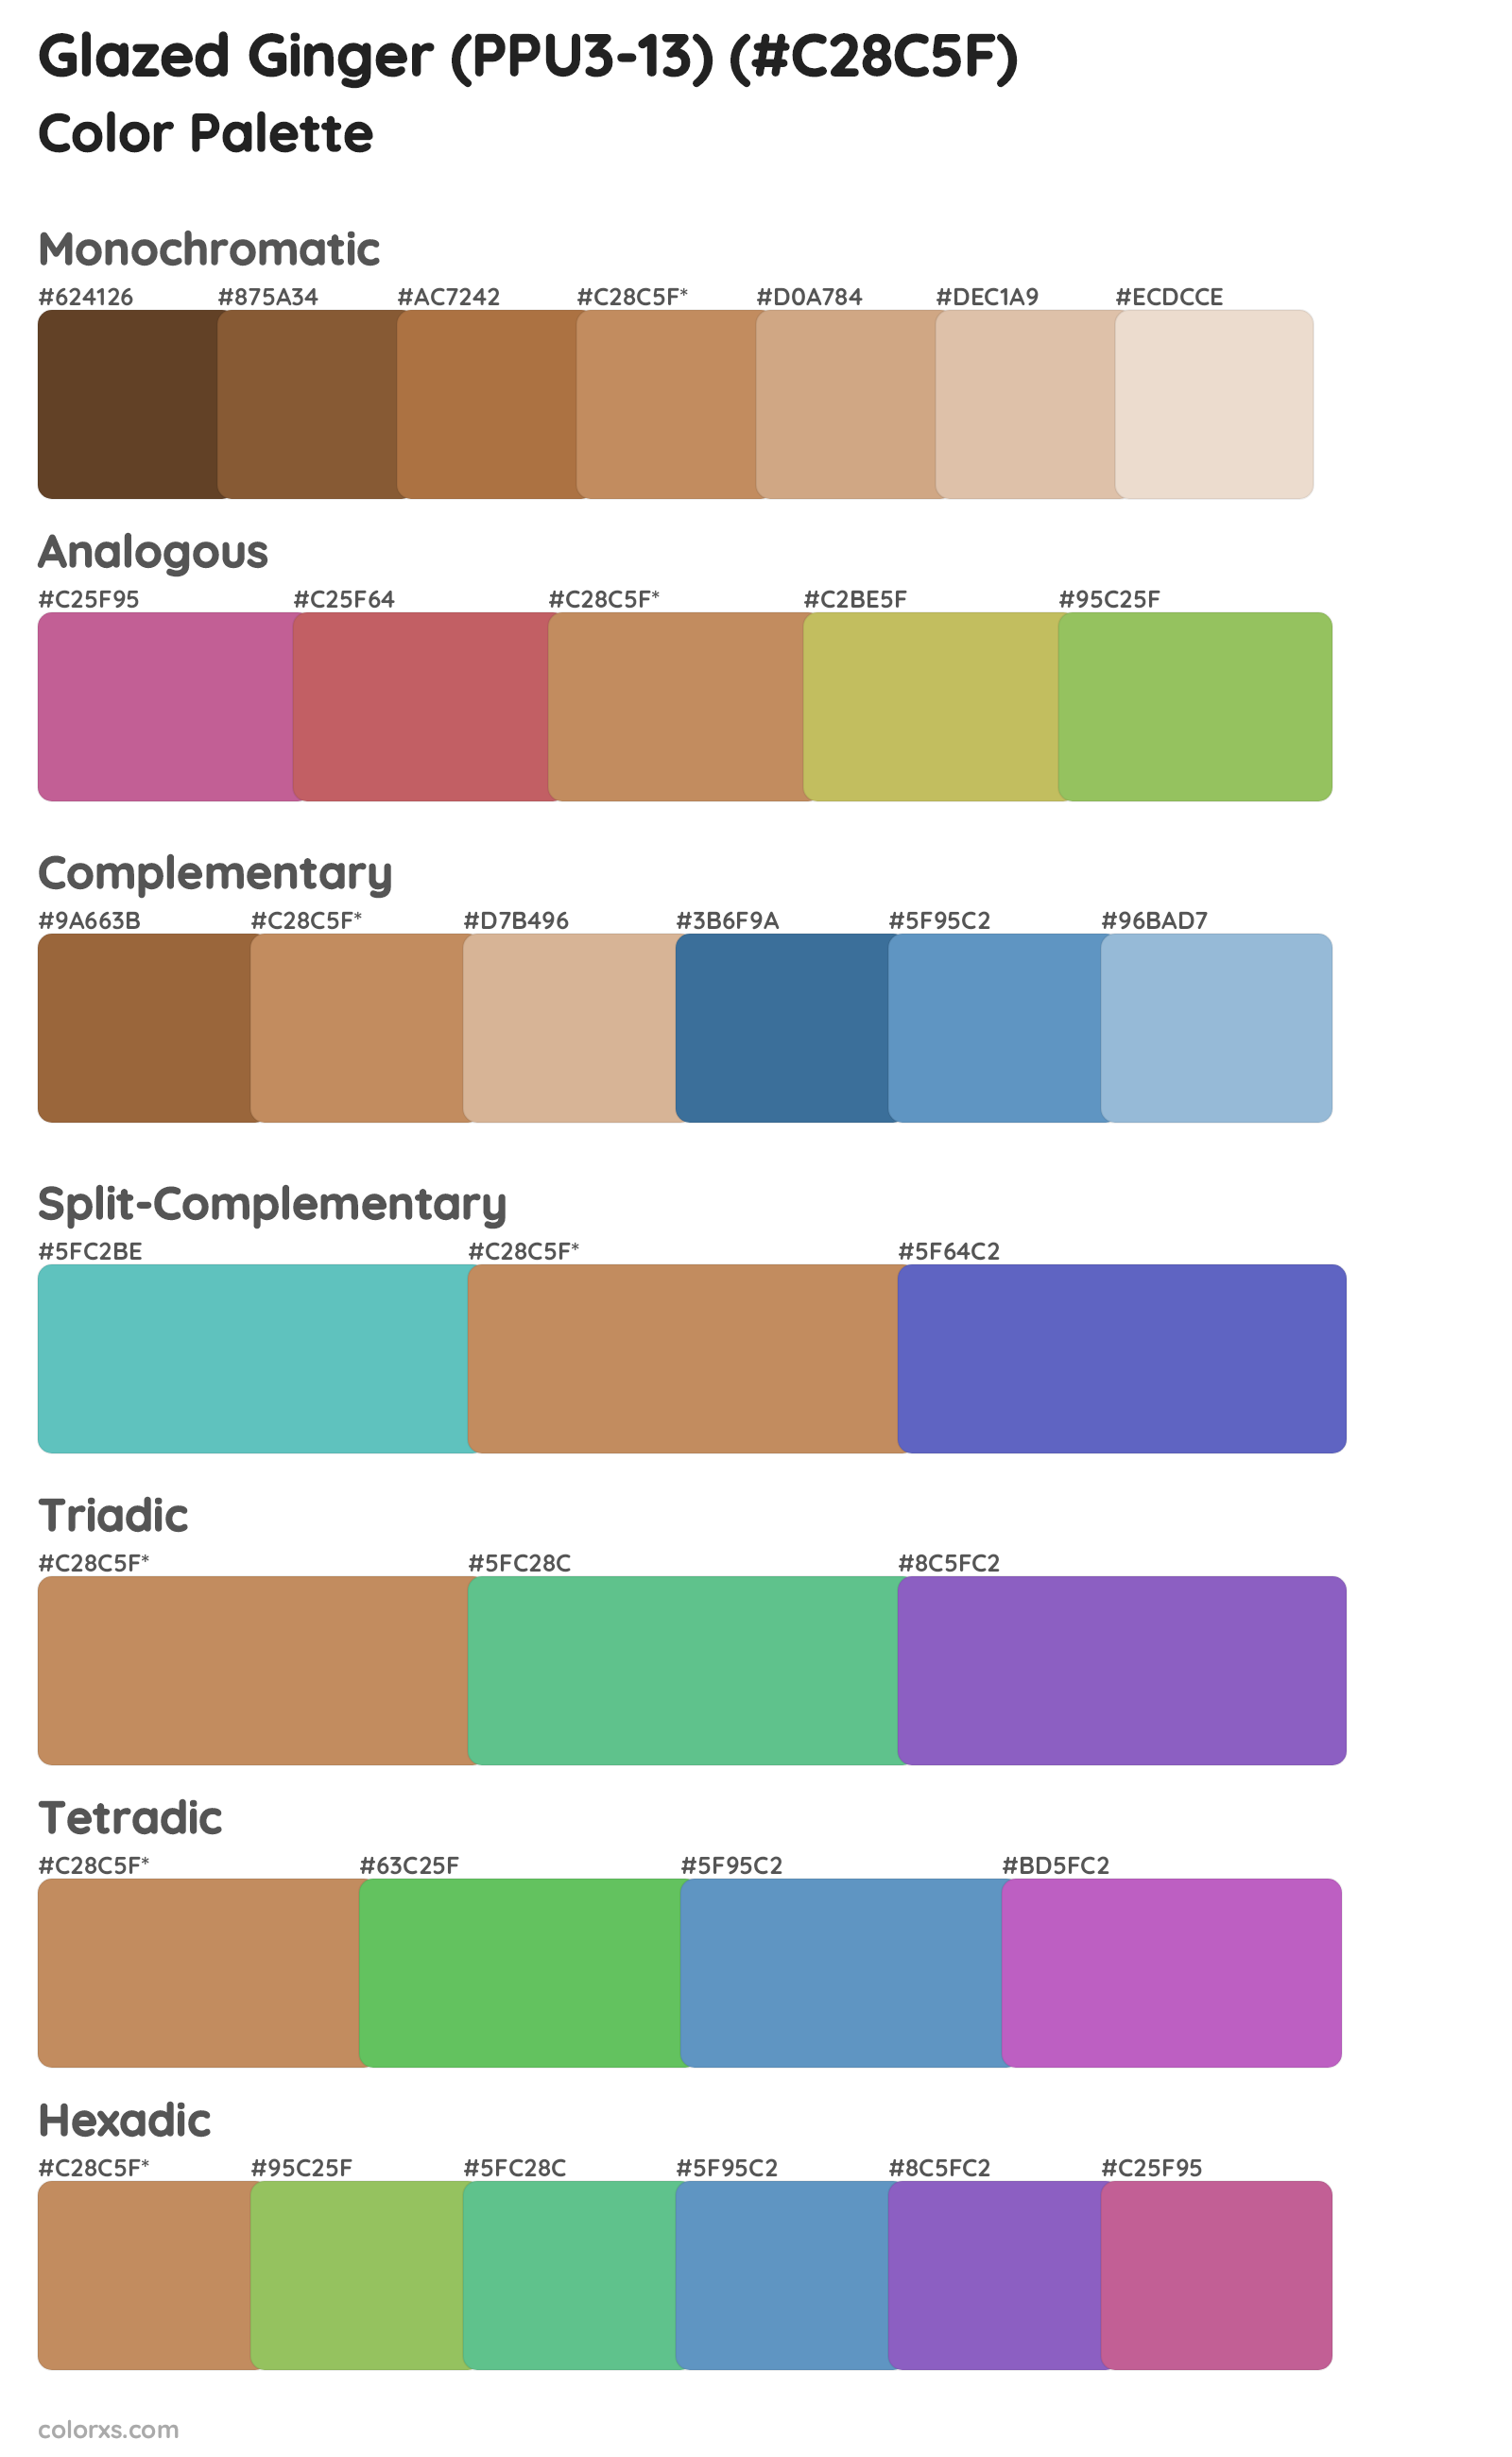 Glazed Ginger (PPU3-13) Color Scheme Palettes